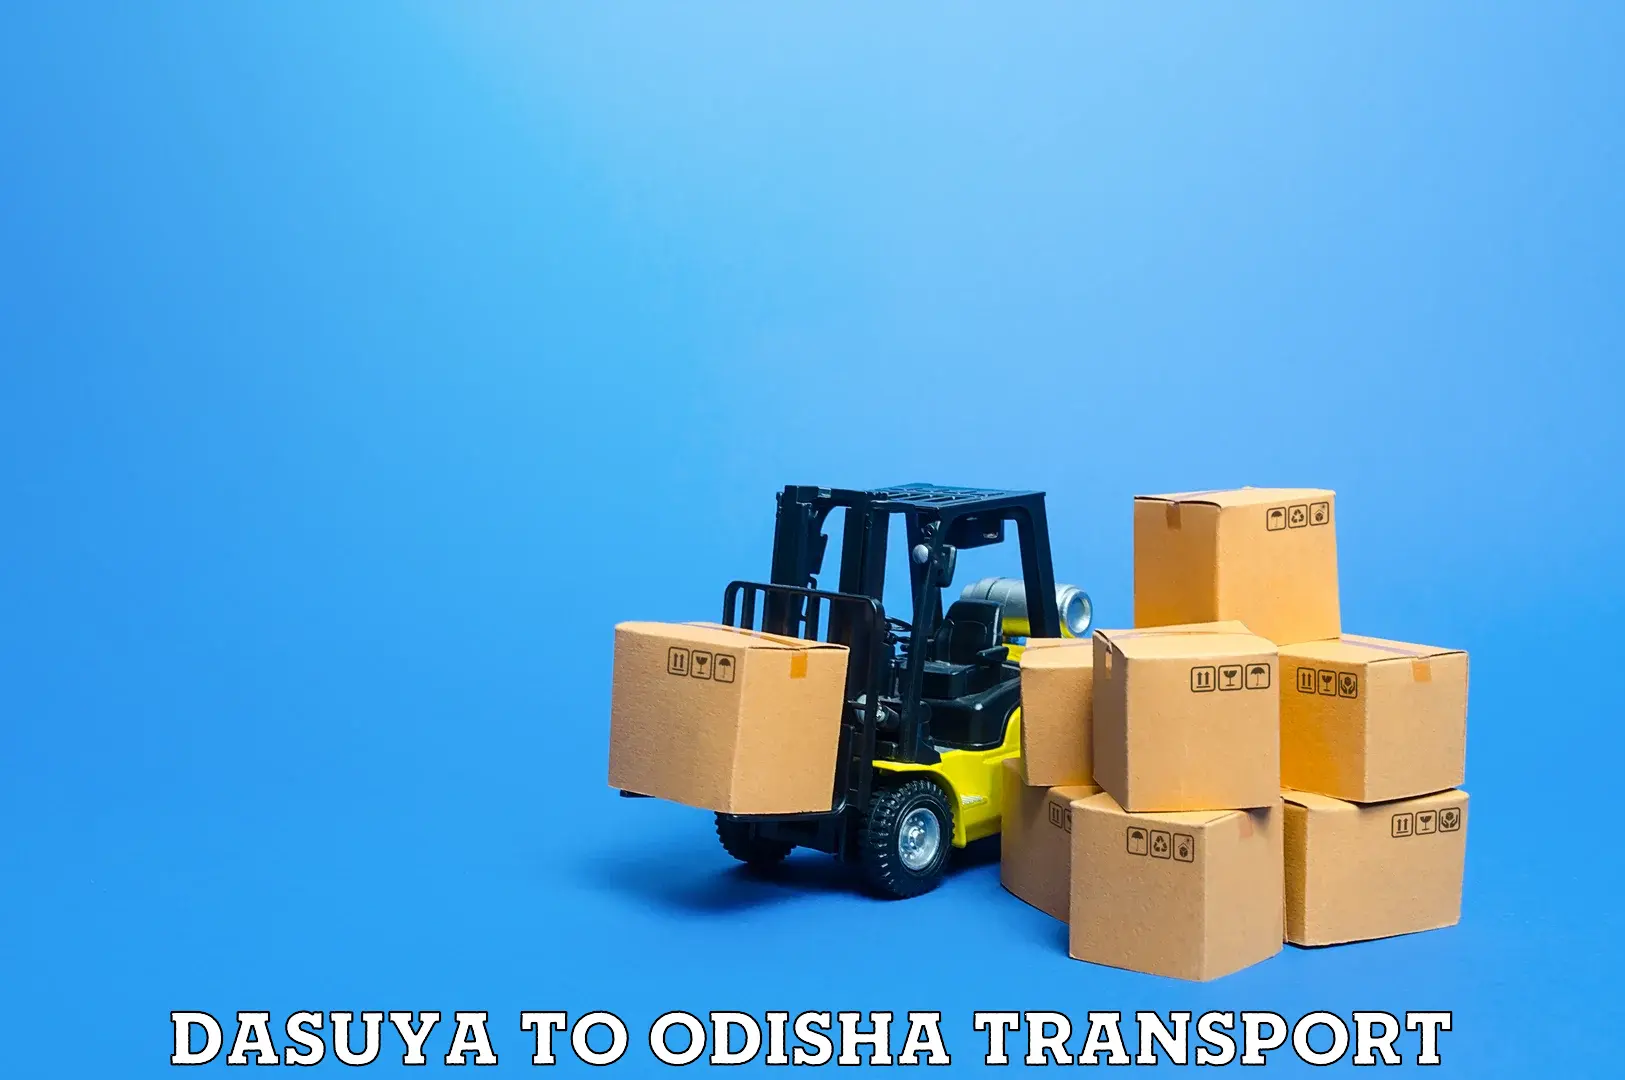 Nearby transport service Dasuya to Keonjhar